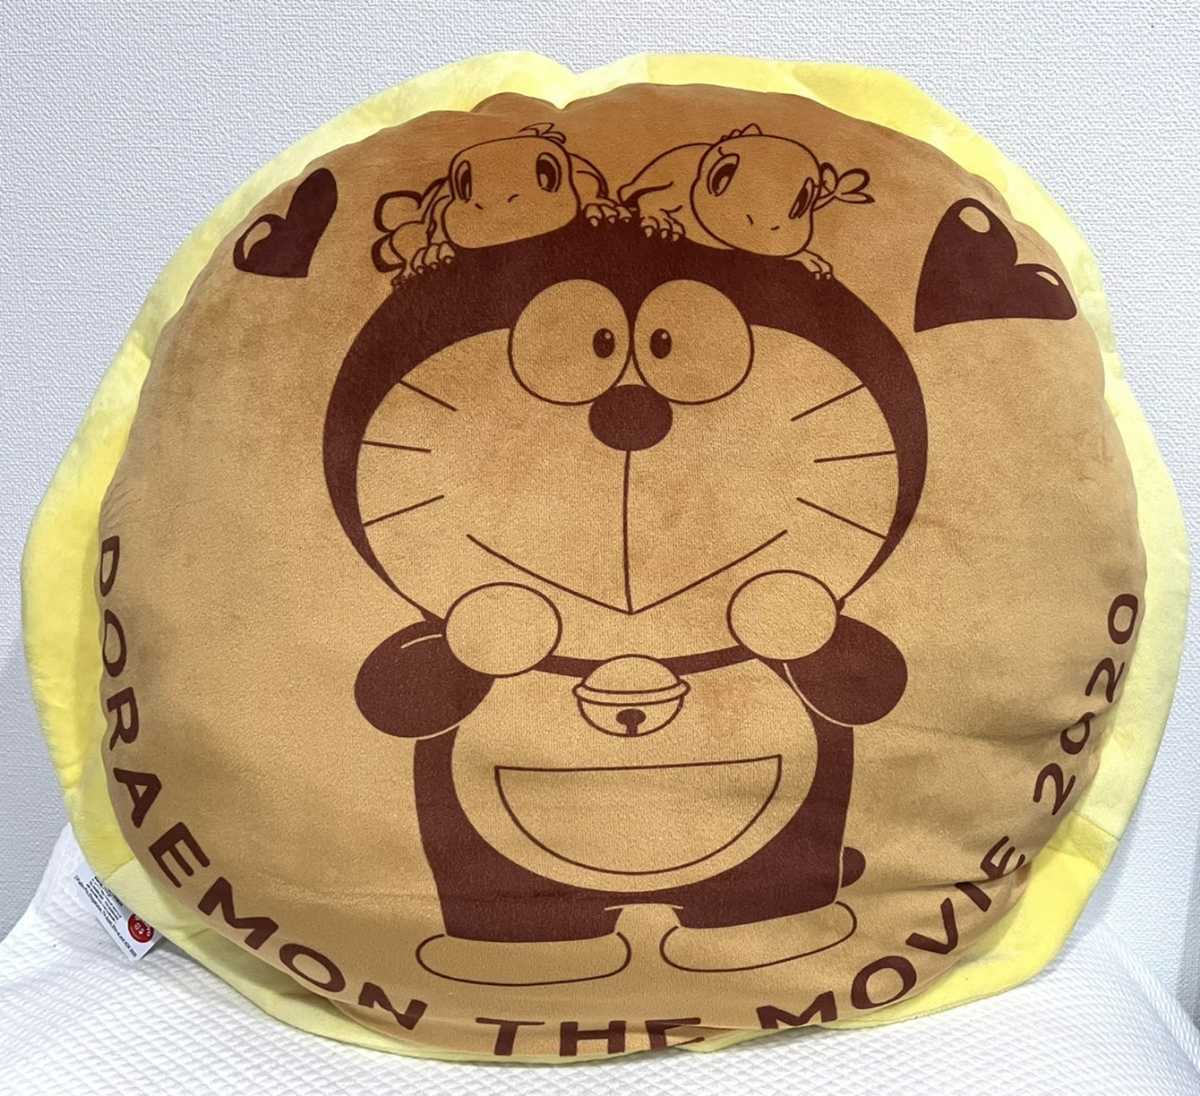 [ dorayaki подушка ] фильм Doraemon 2020 рост futoshi. новый динозавр dorayaki подушка кий & Mu с биркой / гонг жарение BIG мягкая игрушка DM